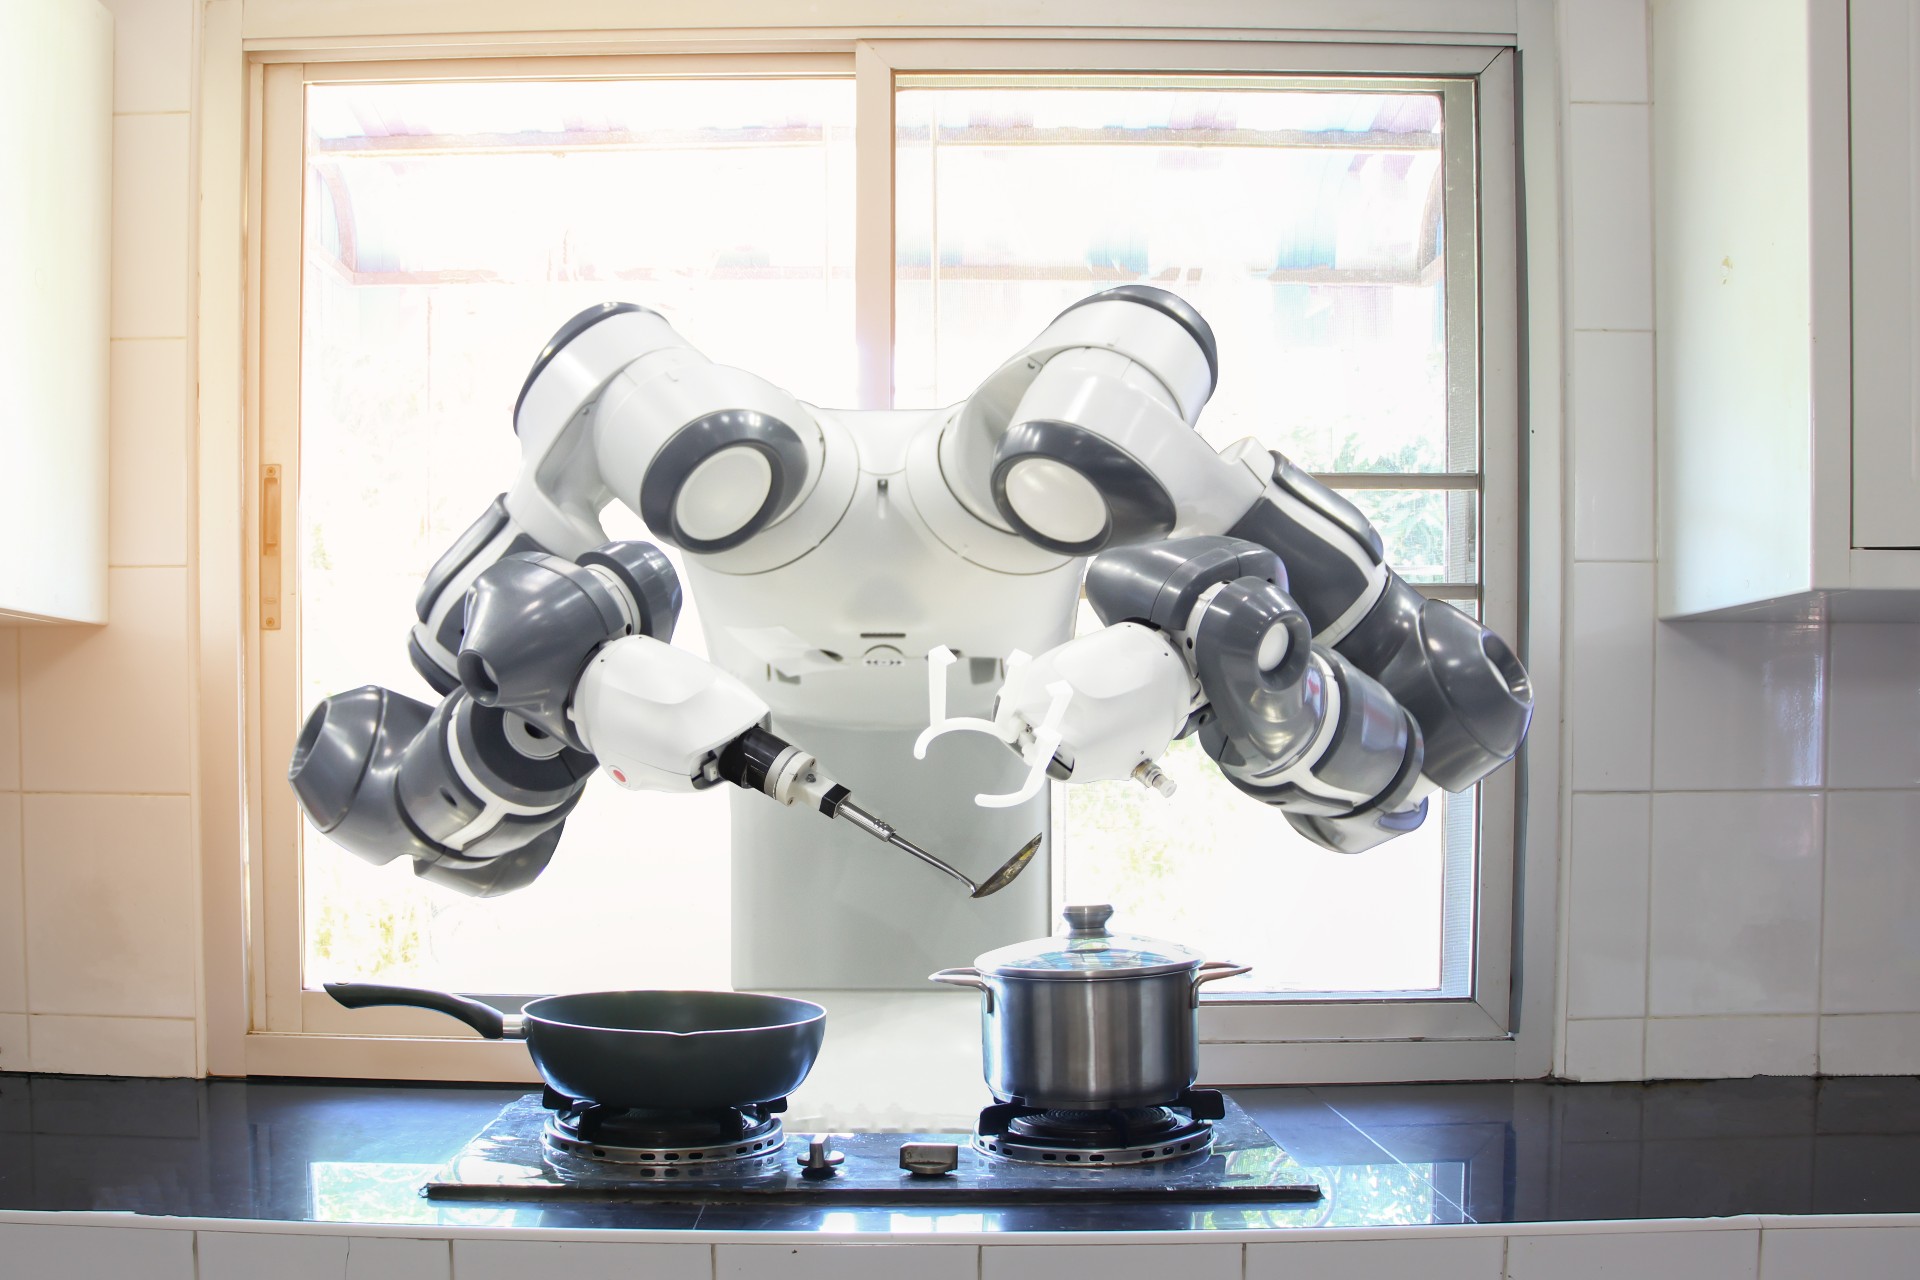 Imagem mostra um robô chef manuseando panelas na cozinha